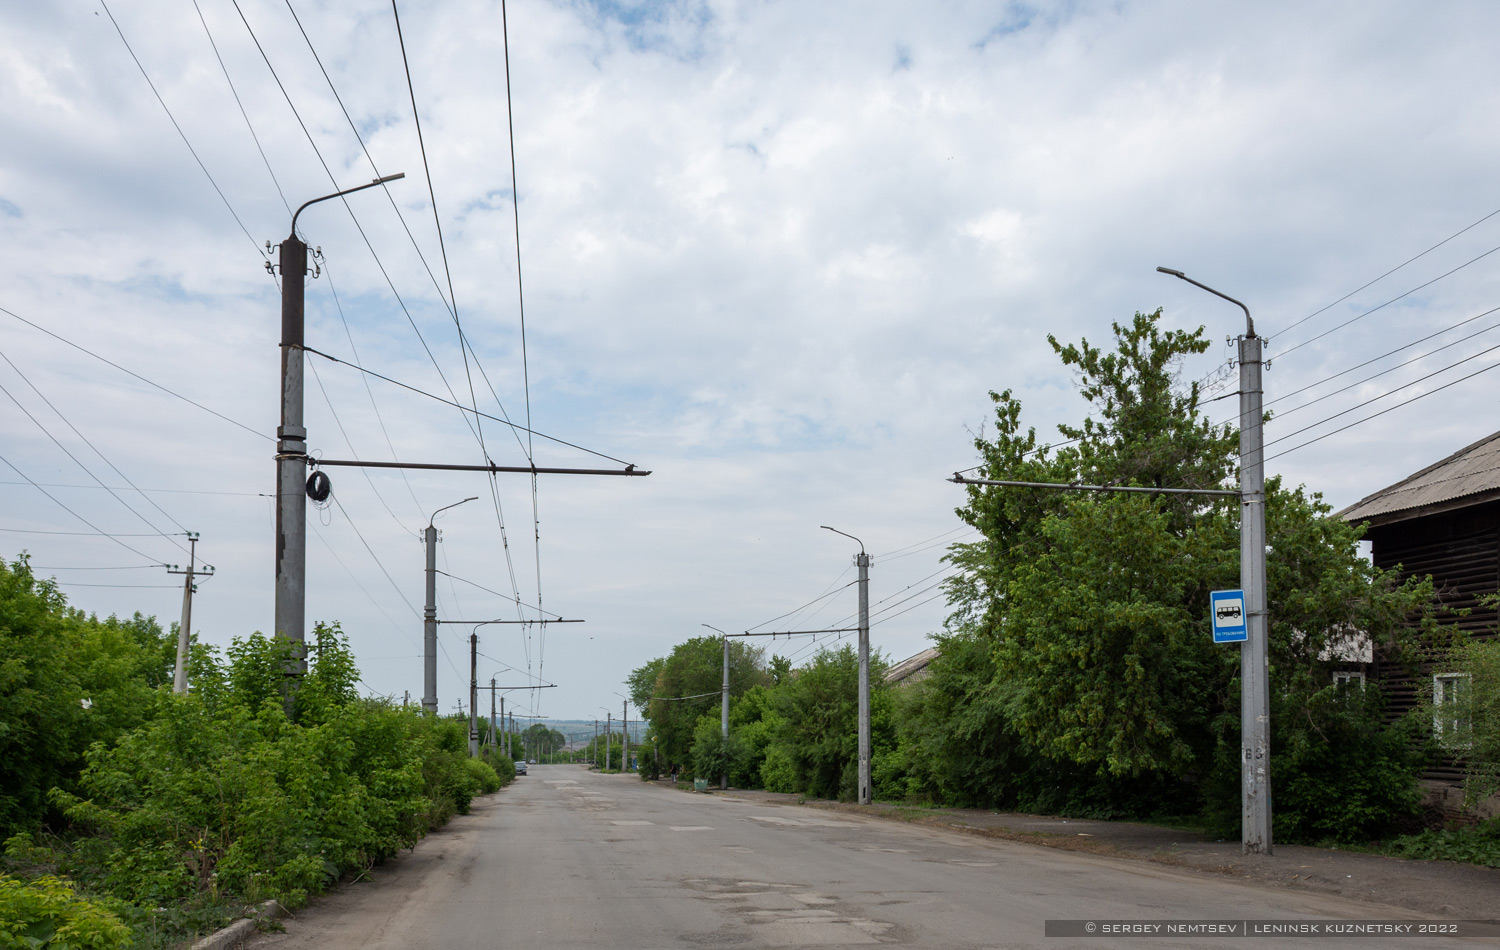 Leninskas-Kuzneckis — Trolley-bus lines and rings